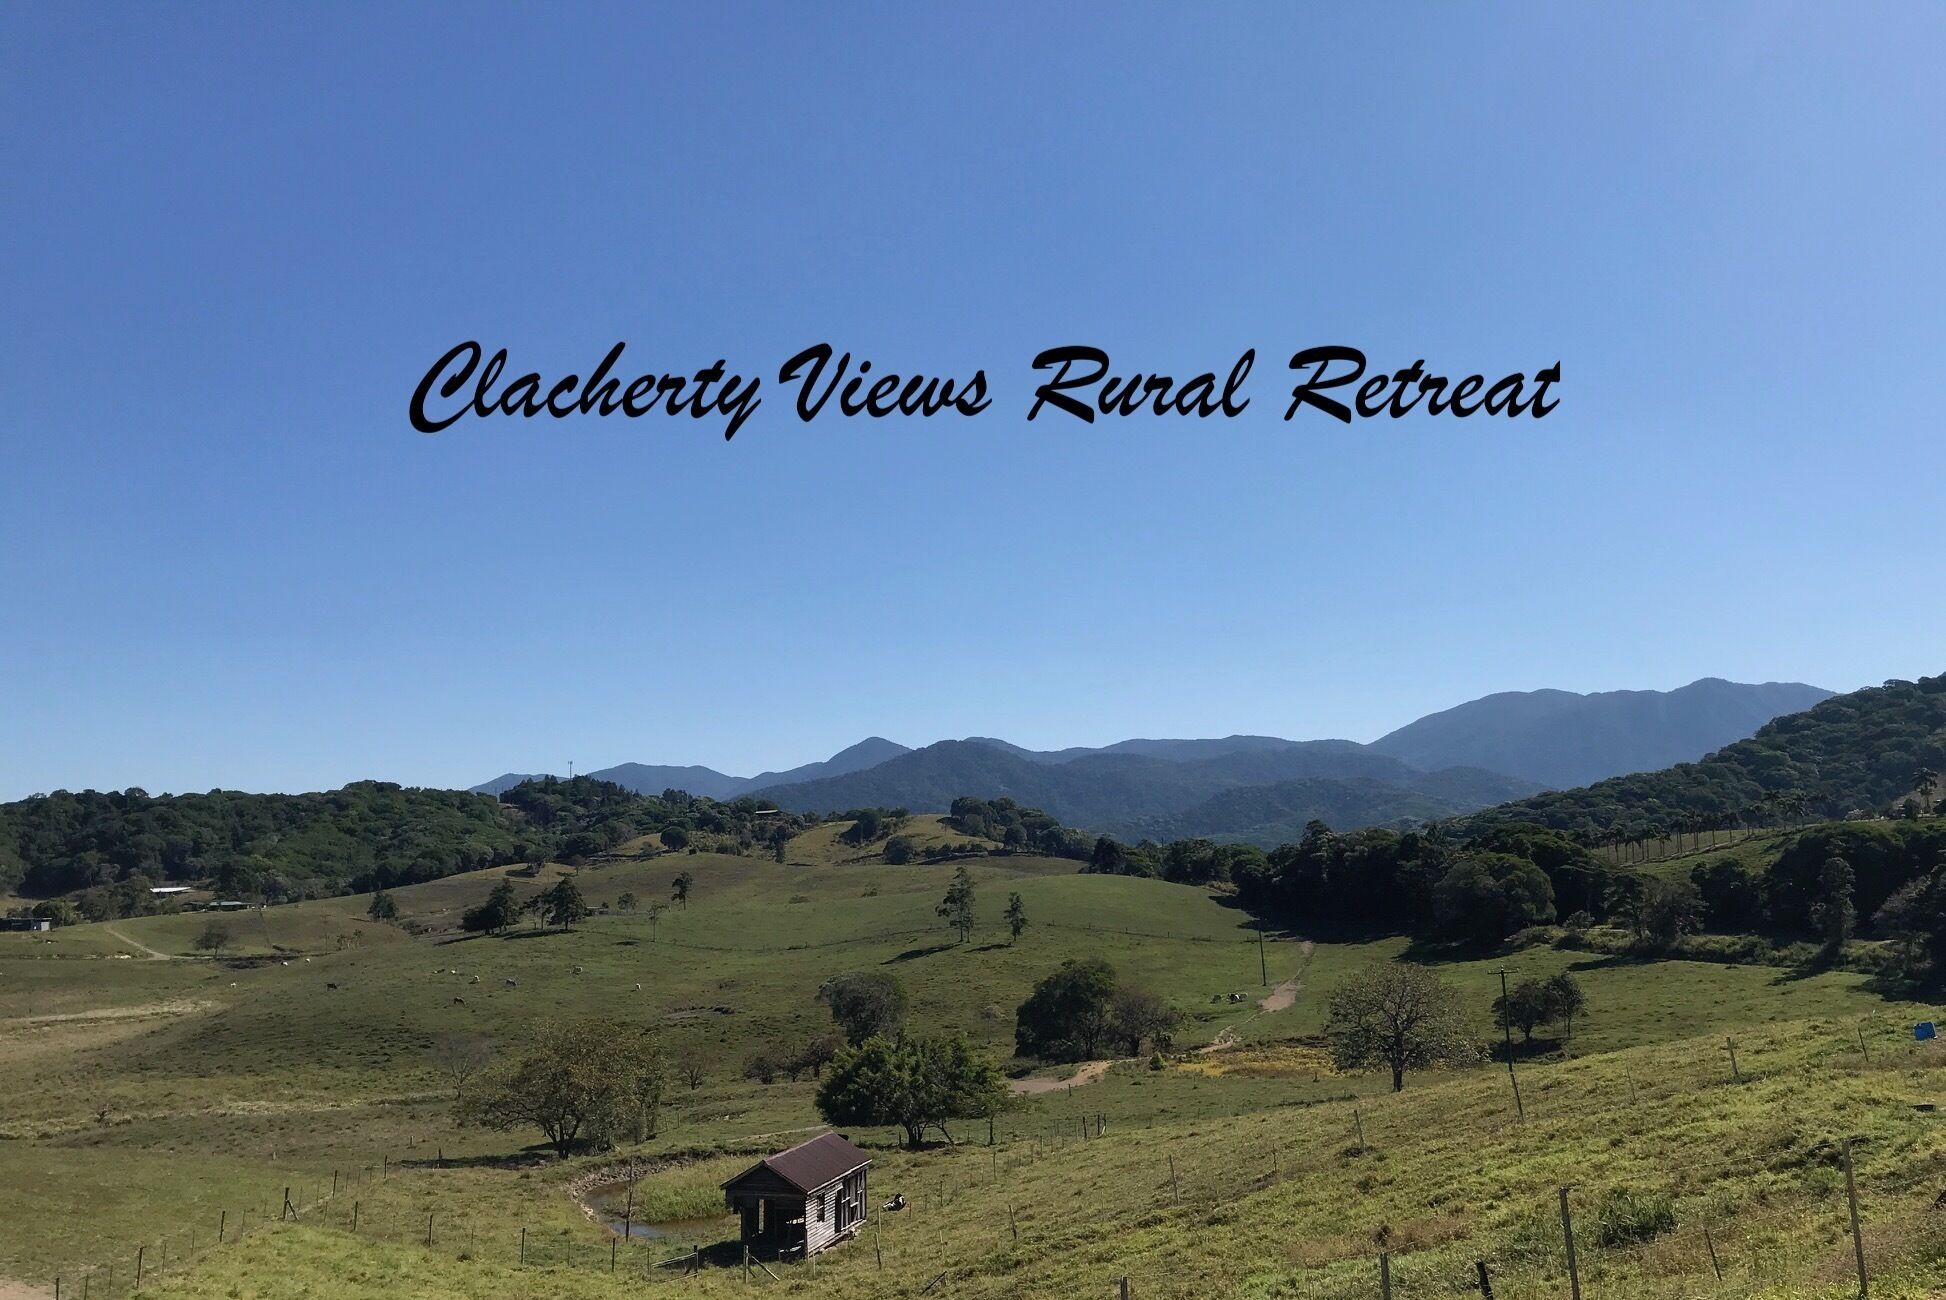 Clacherty Views Rural Retreat